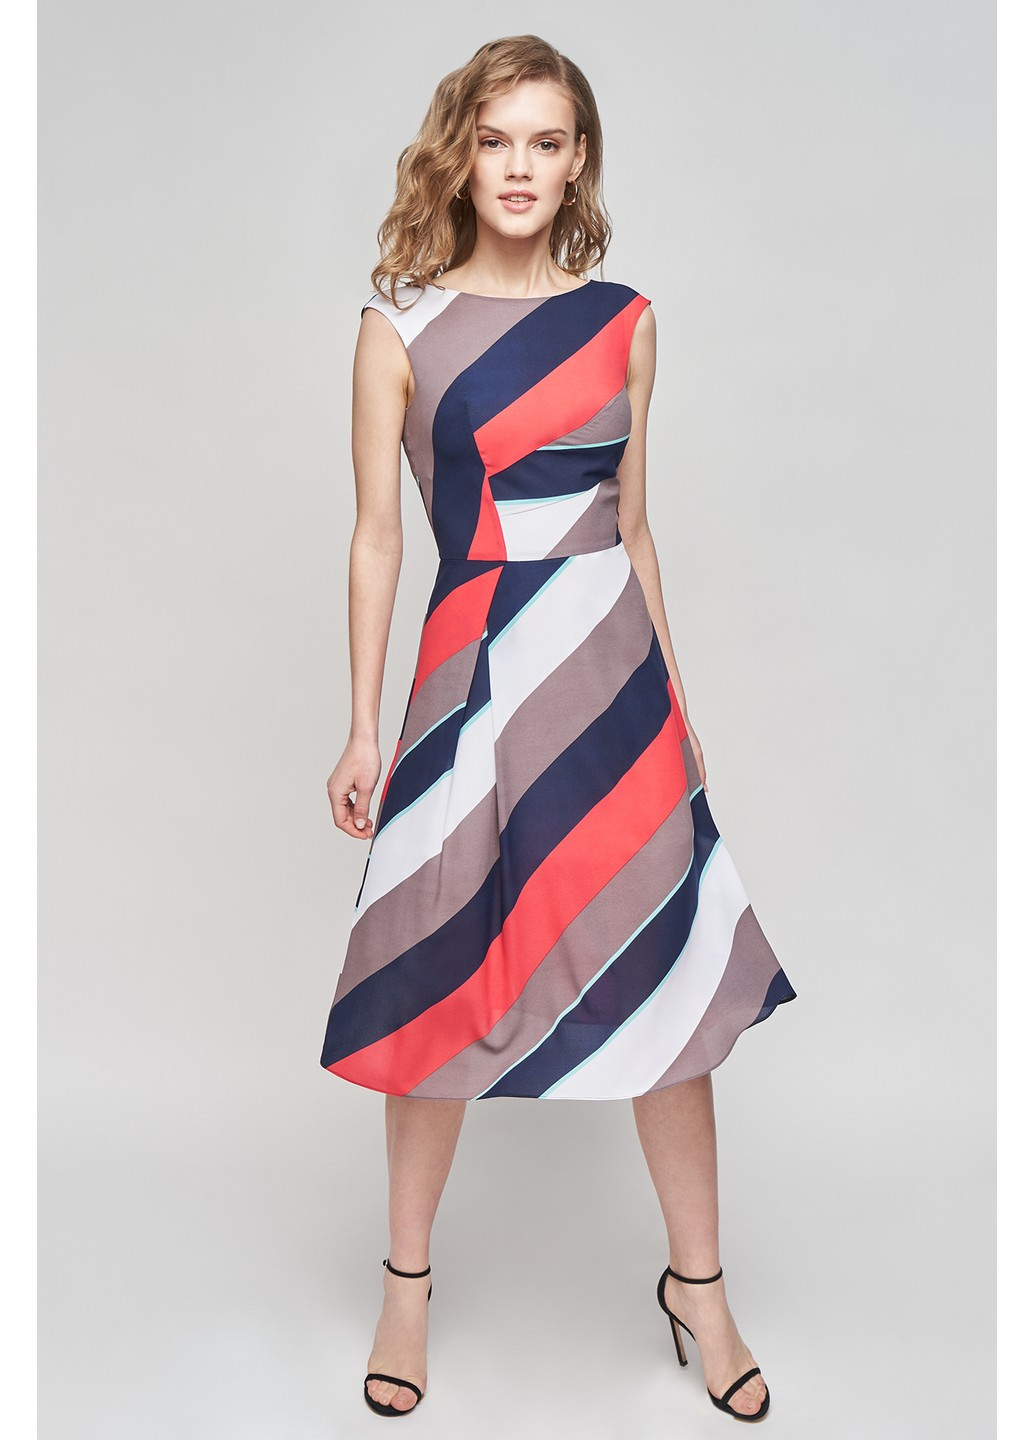 Комбинированное деловое платье тара клеш, с пышной юбкой BYURSE с абстрактным узором